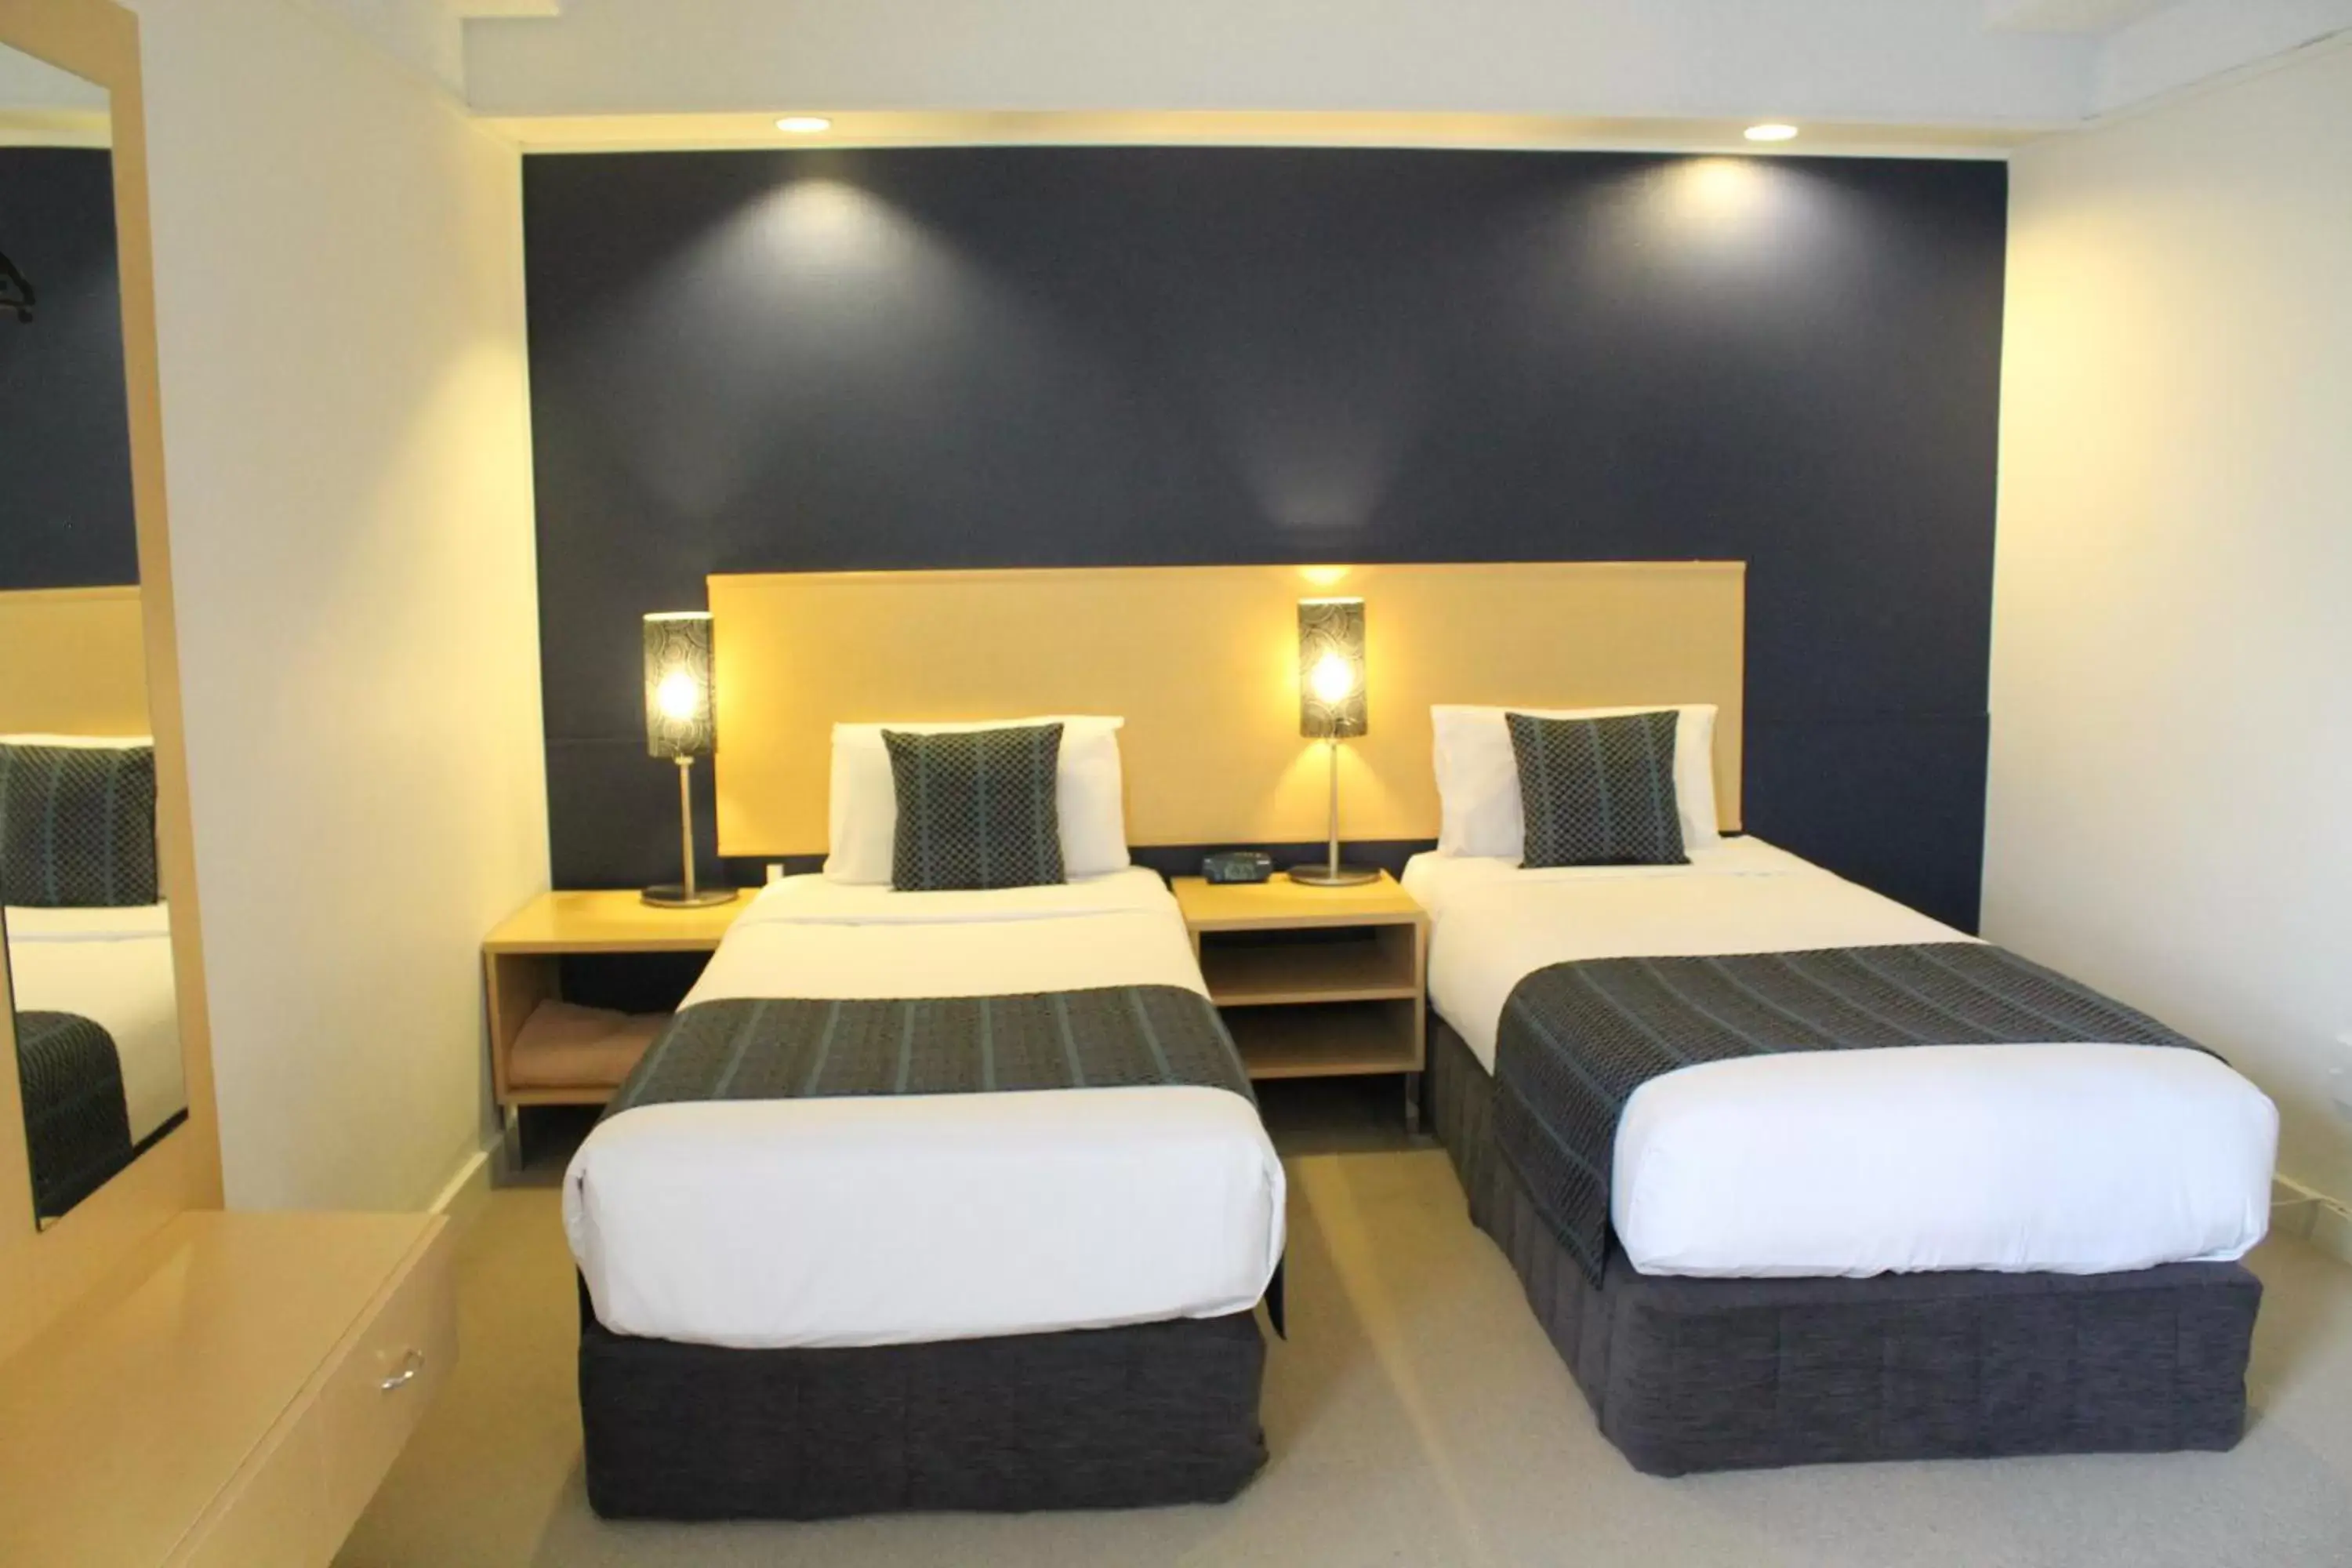 Bedroom, Room Photo in Willis Wellington Hotel